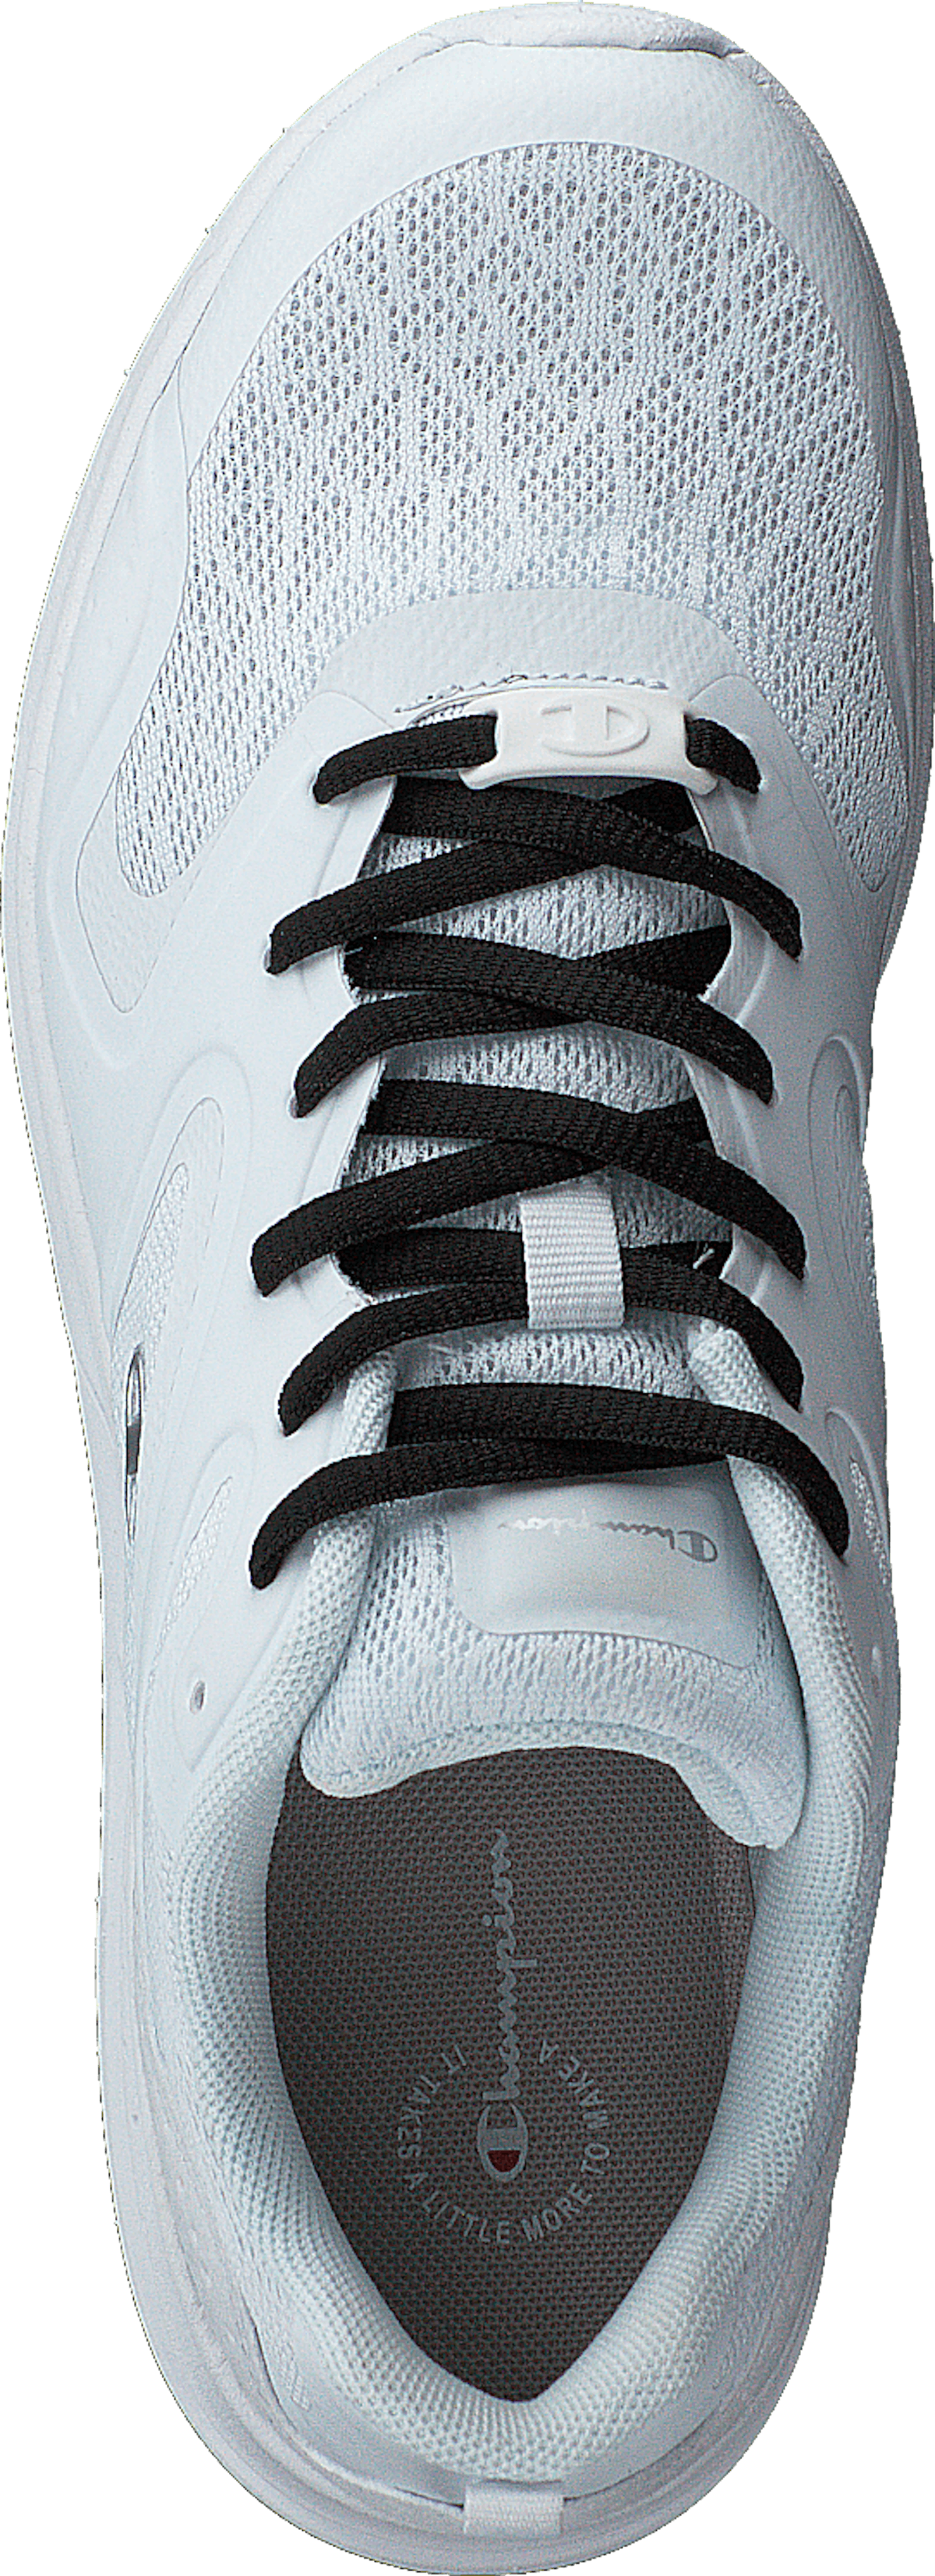 Low Cut Shoe Sleek White